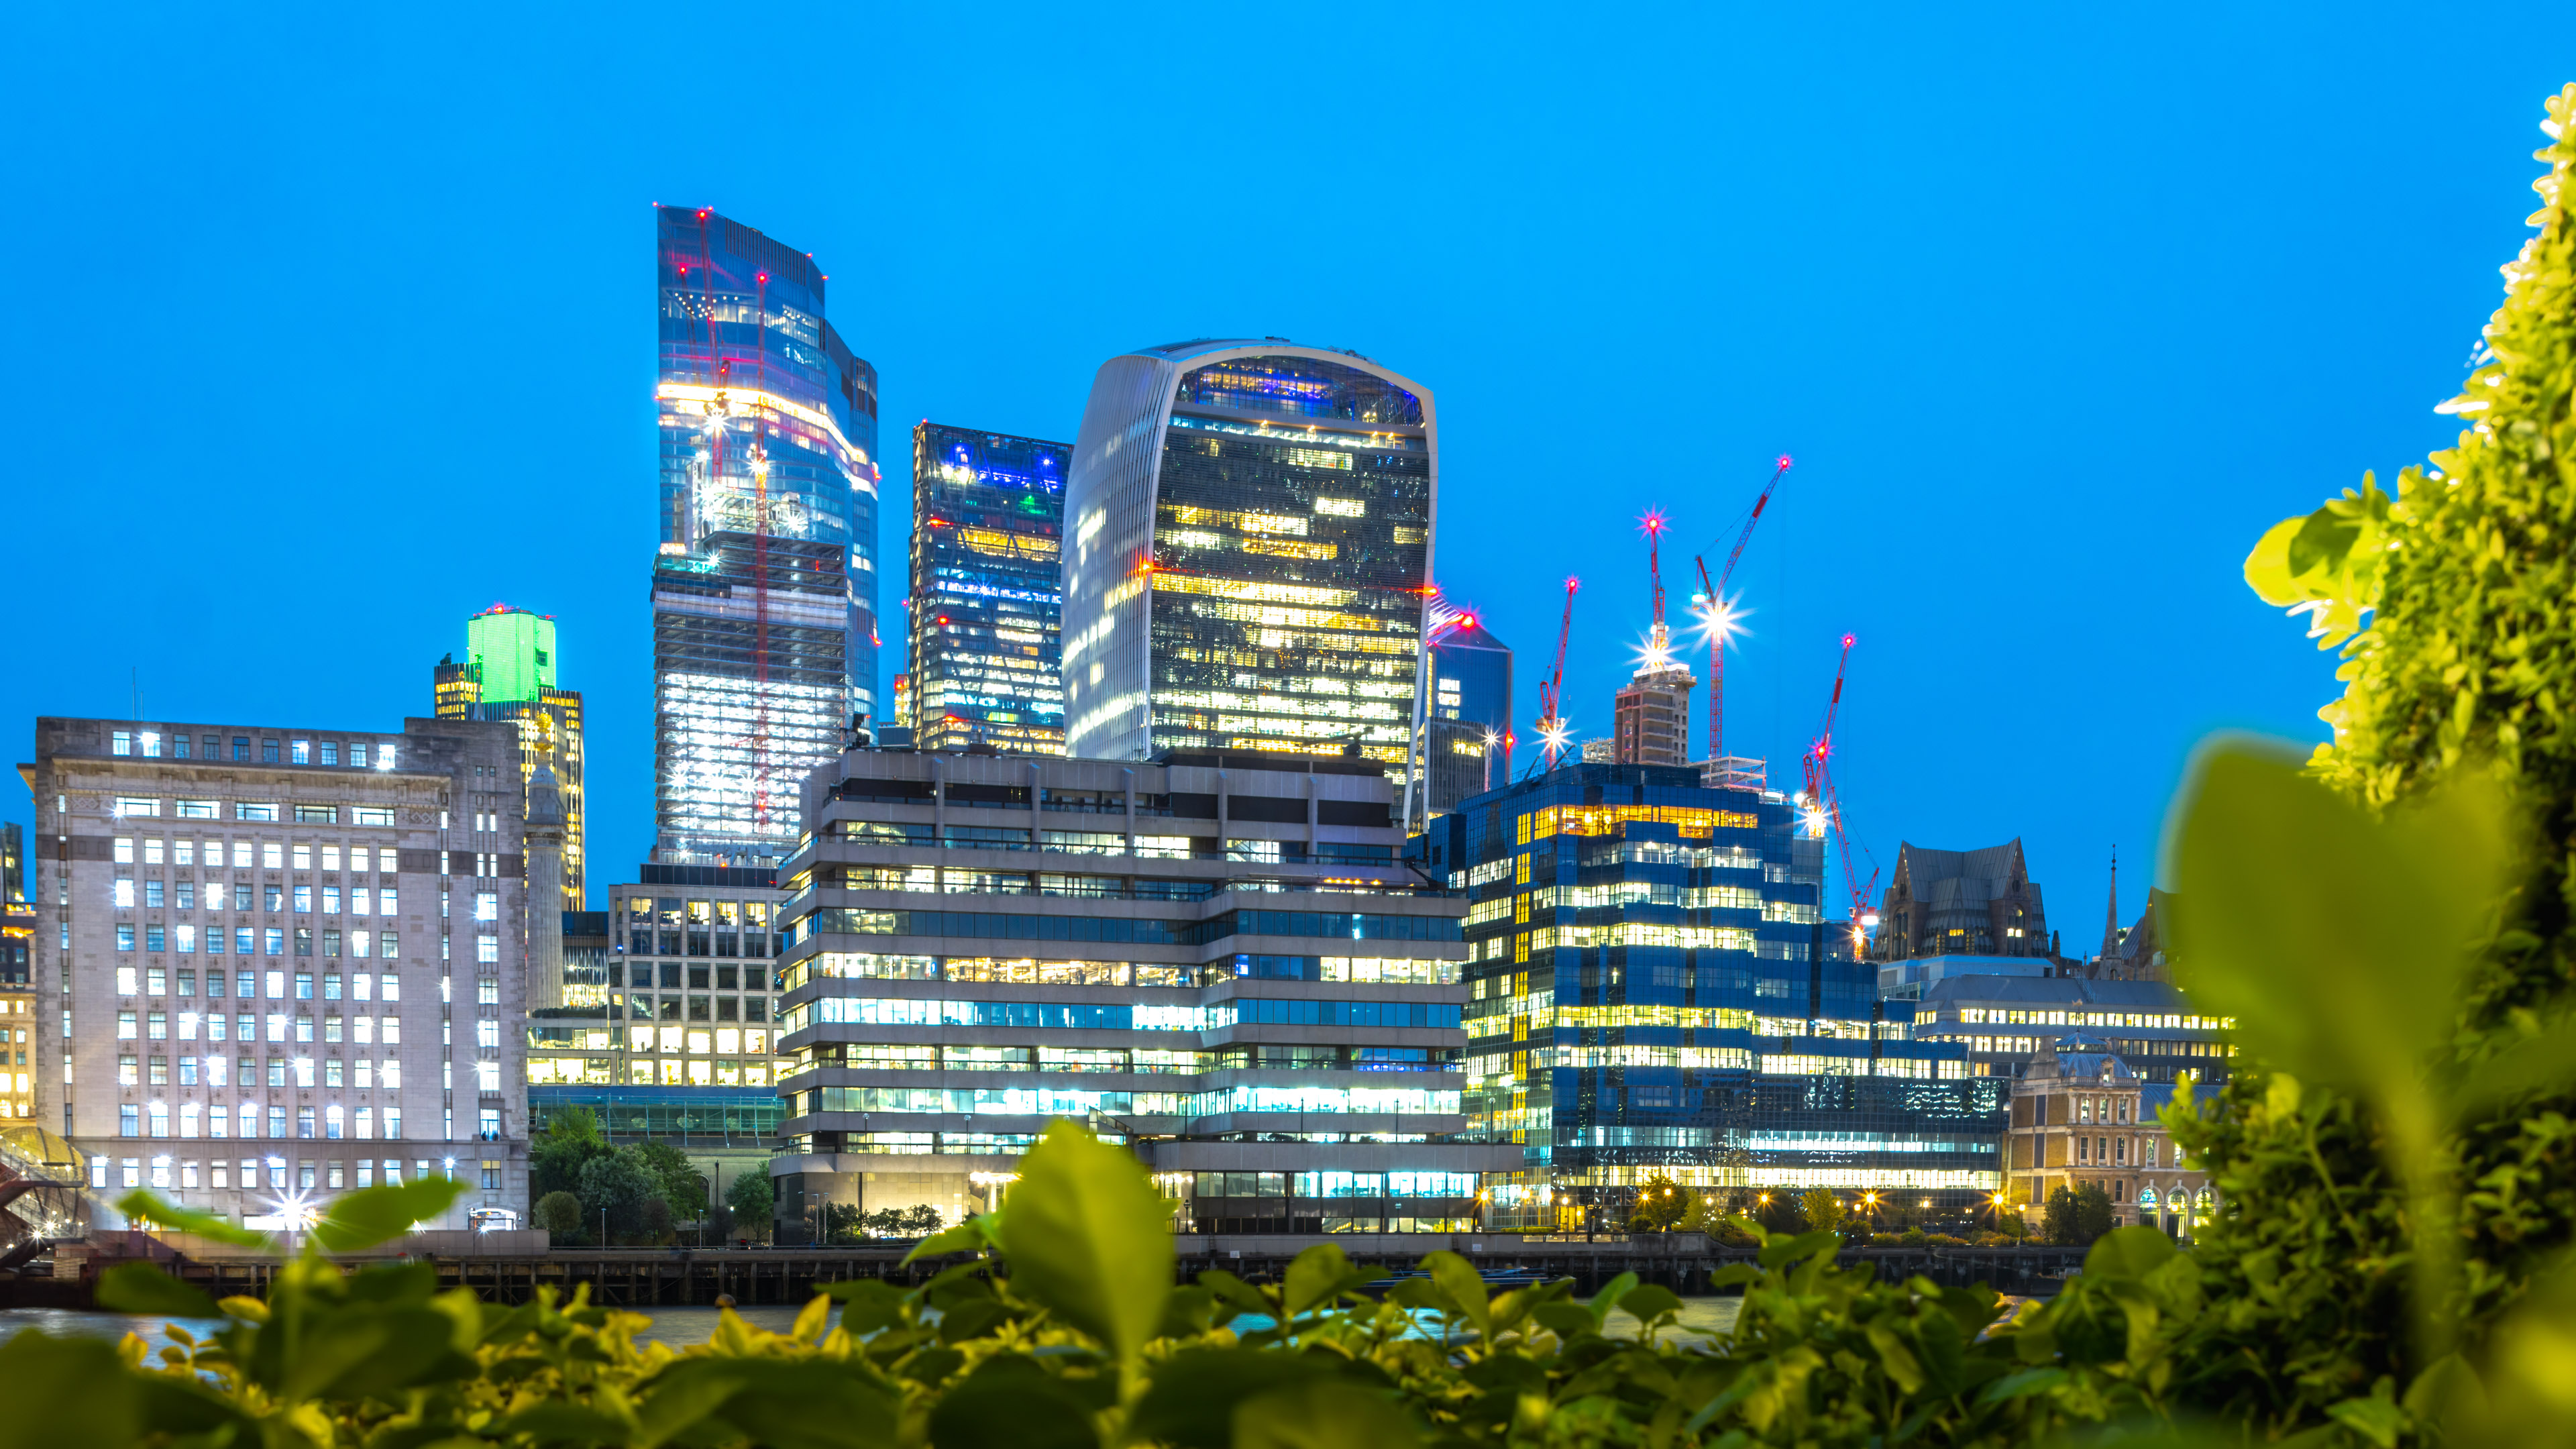 download best wallpaper of London night skyscrapers in 4K Ultra HD resolution